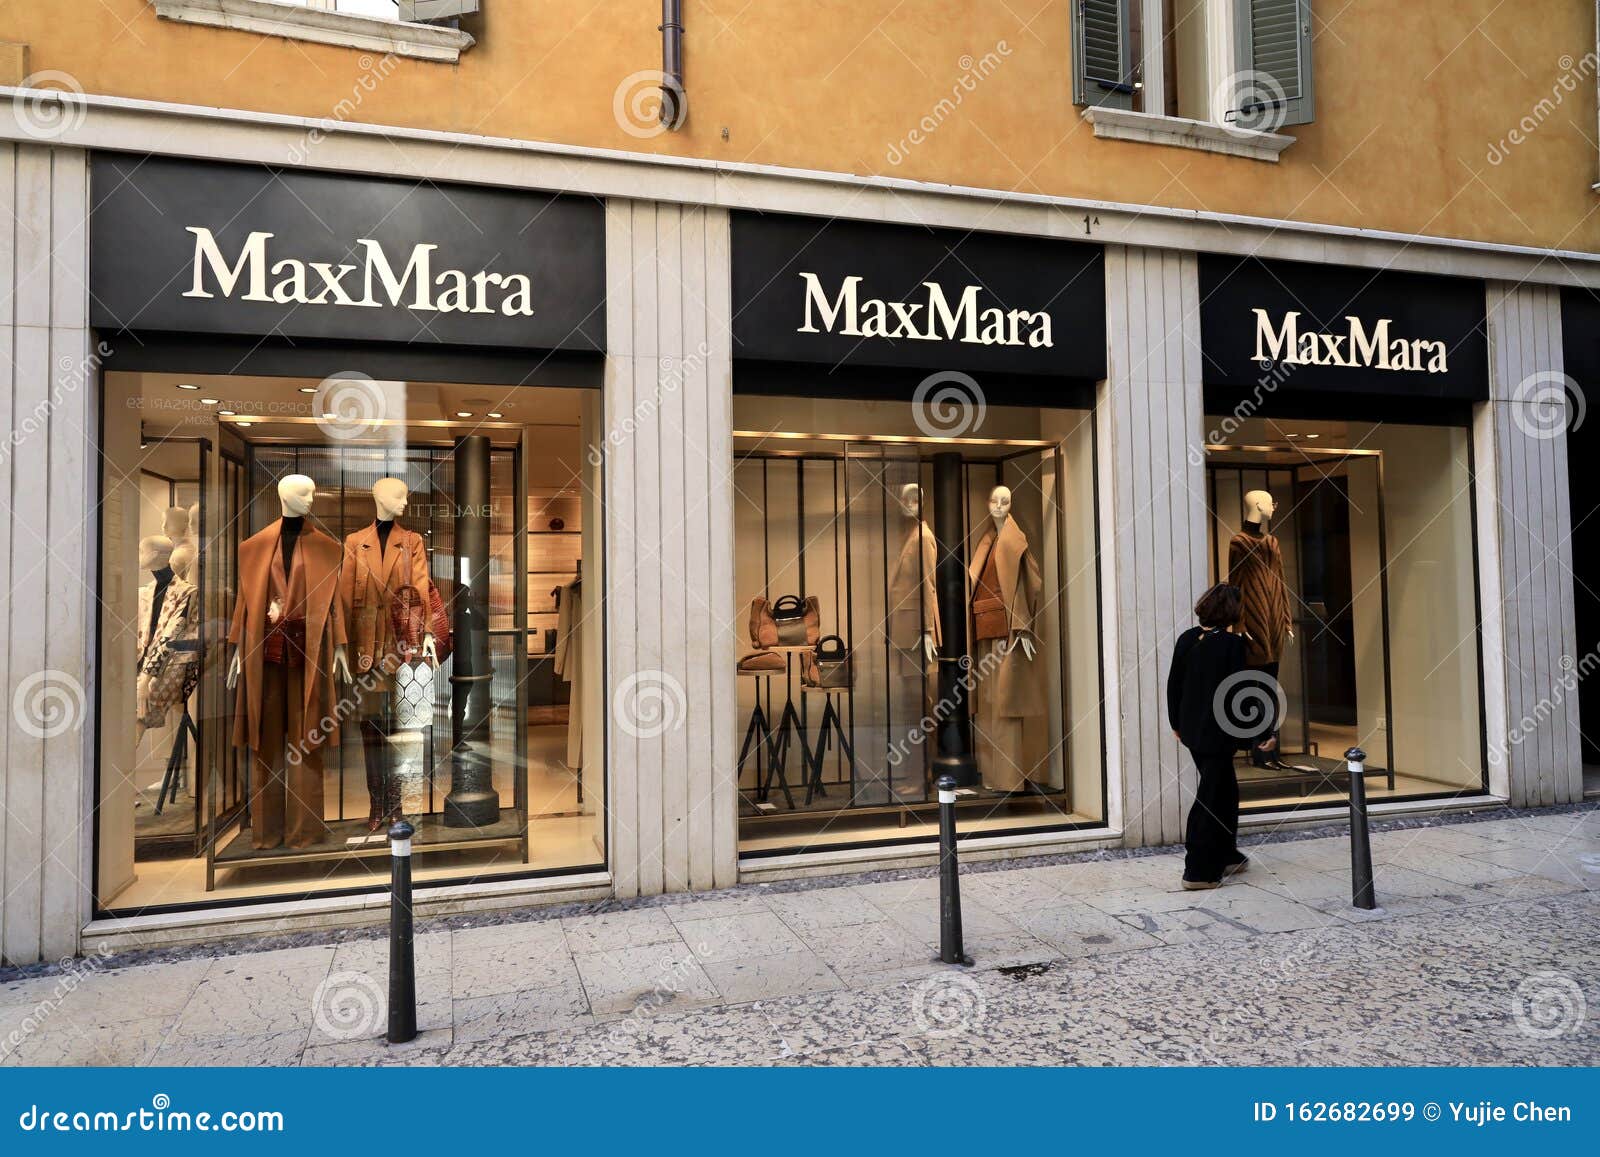 MaxMara Retail Store on the Street of Verona,Italy Editorial Stock ...